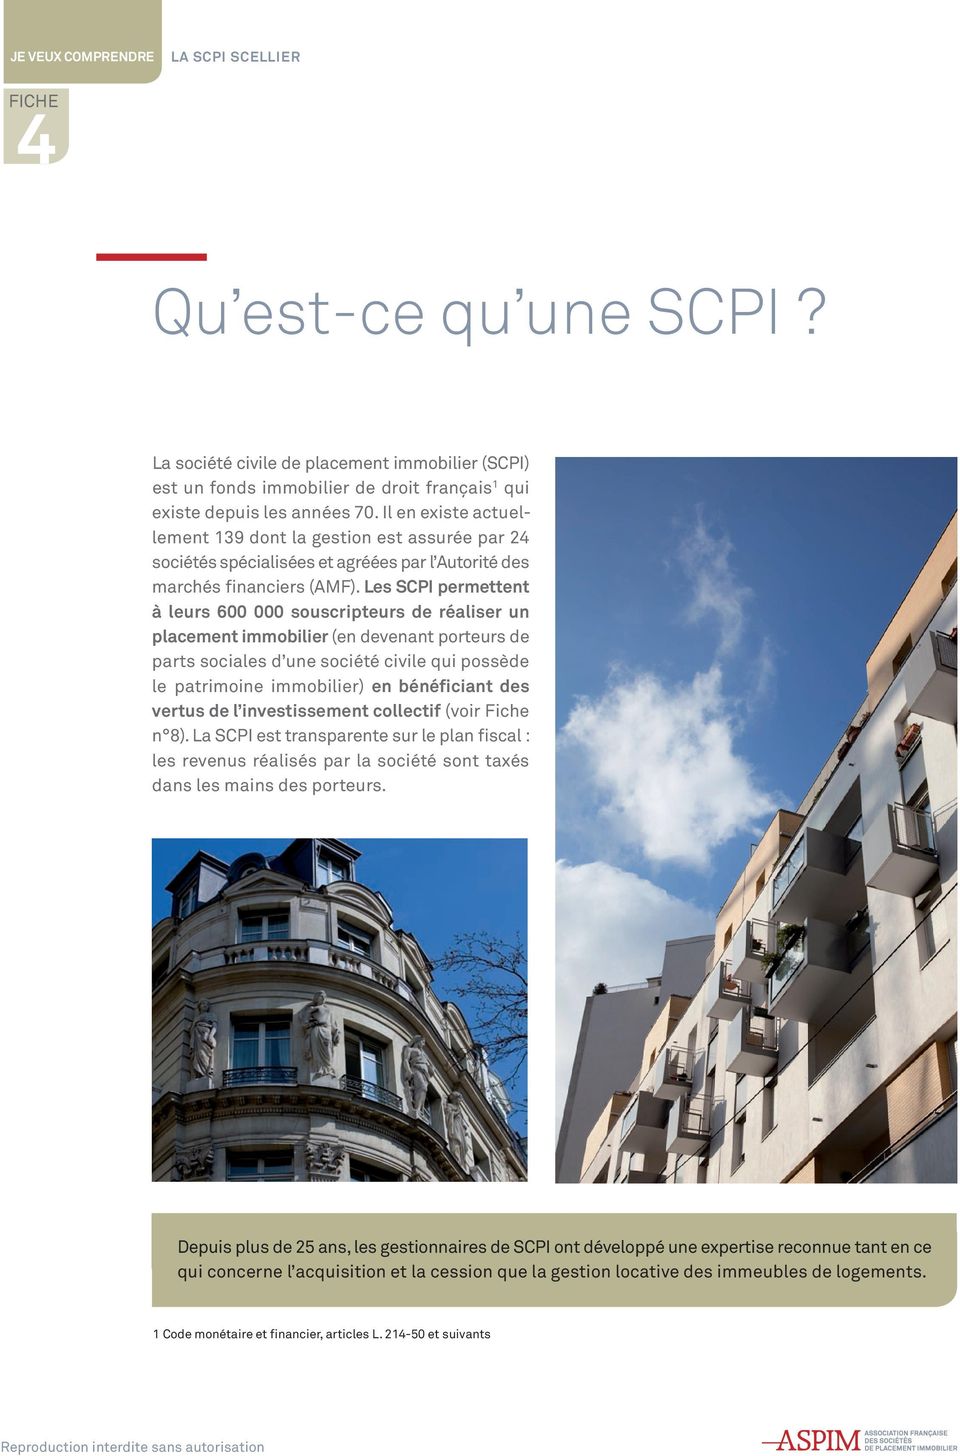 Les SCPI permettent à leurs 600 000 souscripteurs de réaliser un placement immobilier (en devenant porteurs de parts sociales d une société civile qui possède le patrimoine immobilier) en bénéficiant